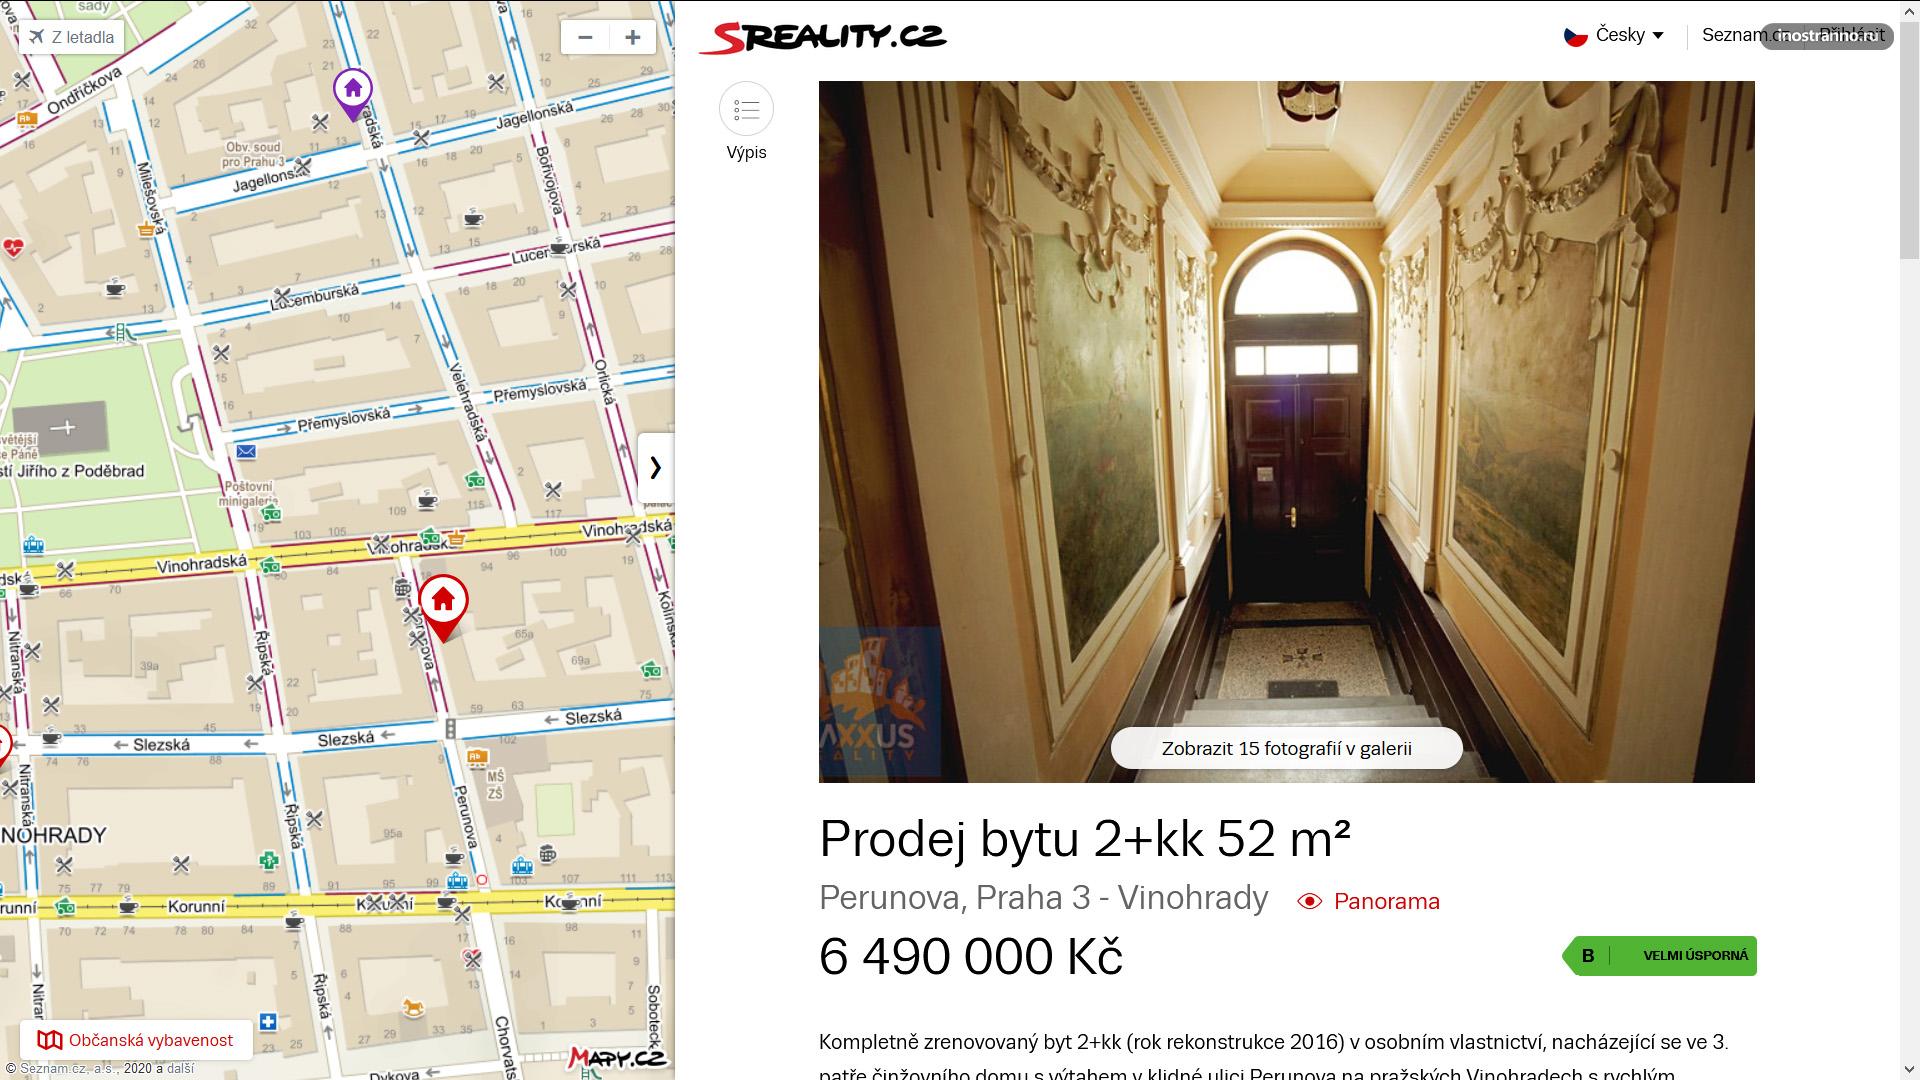 Двухкомнатная квартира в районе Вингорады в Праге